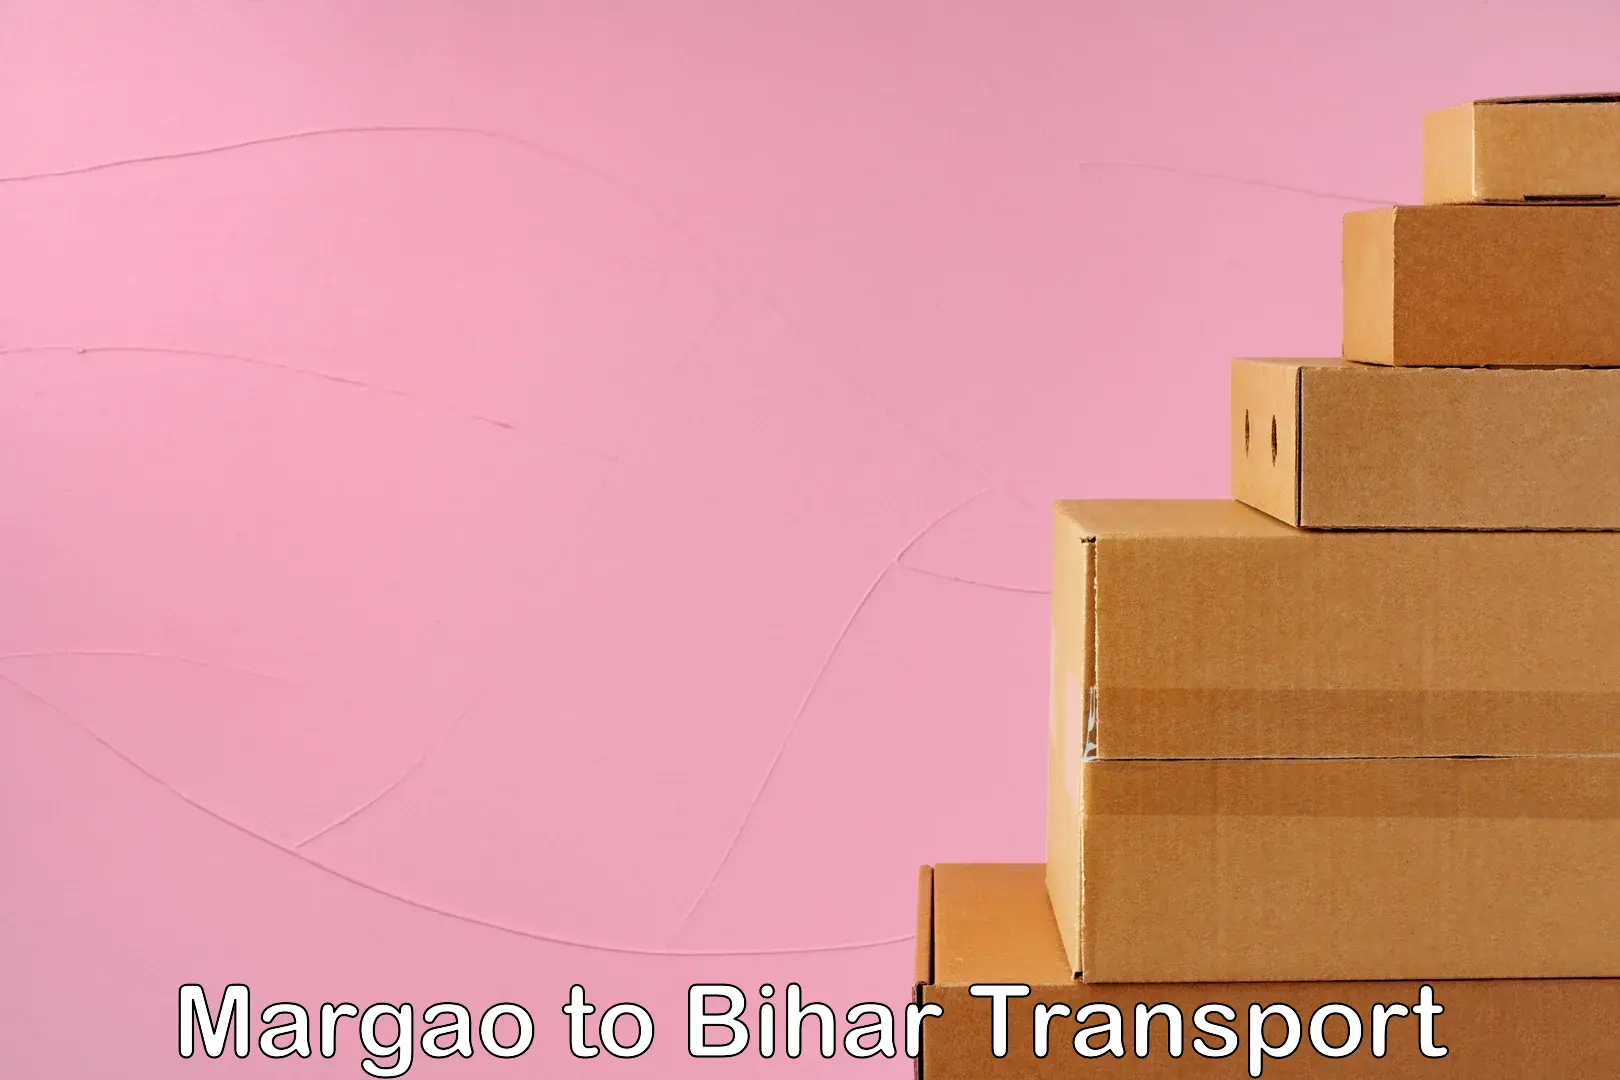 International cargo transportation services Margao to Goh Aurangabad